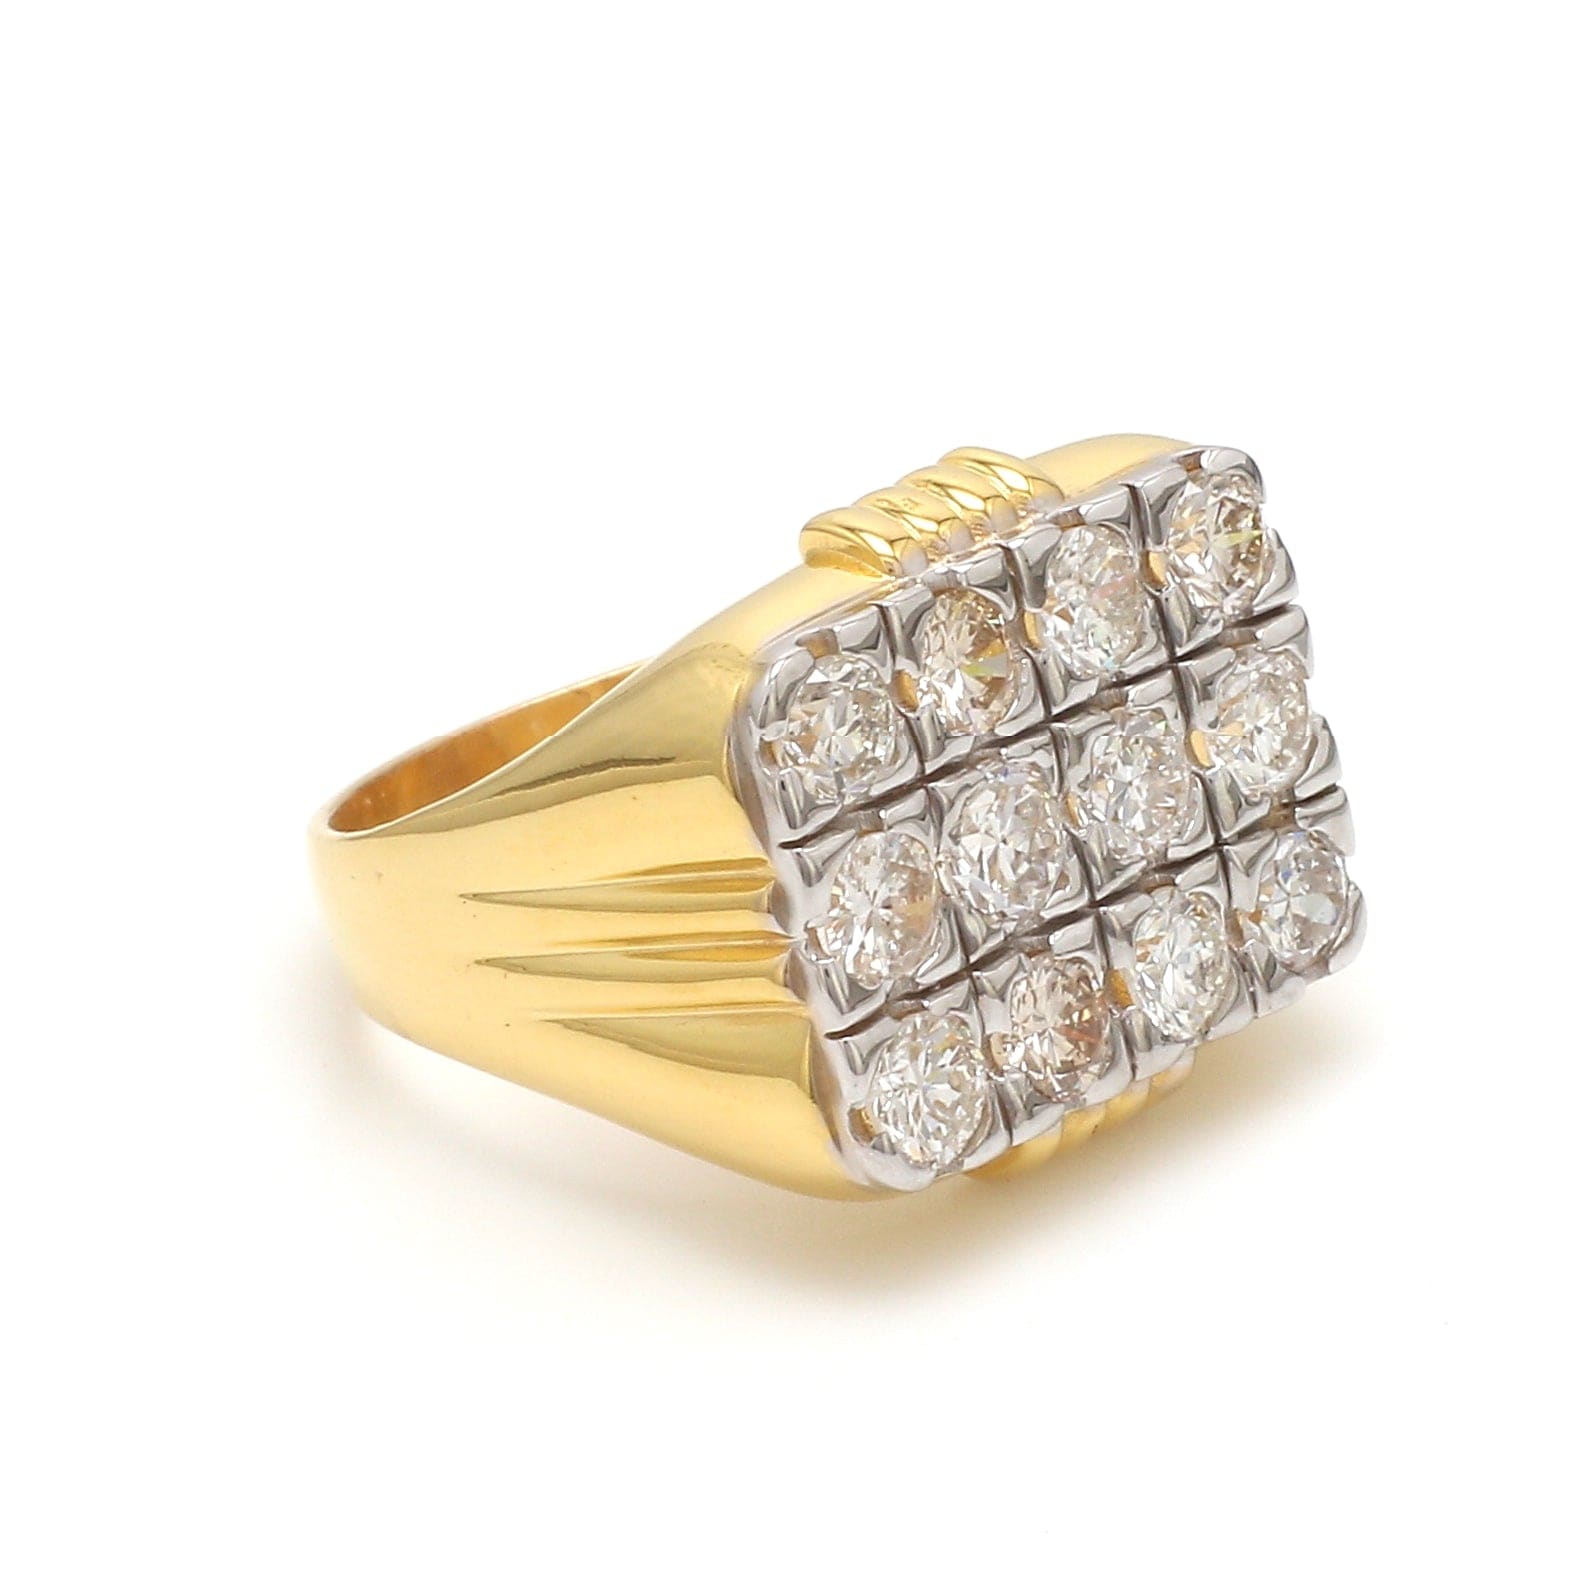 Beautiful Wide Band Diamond Ring 14K Yellow Gold